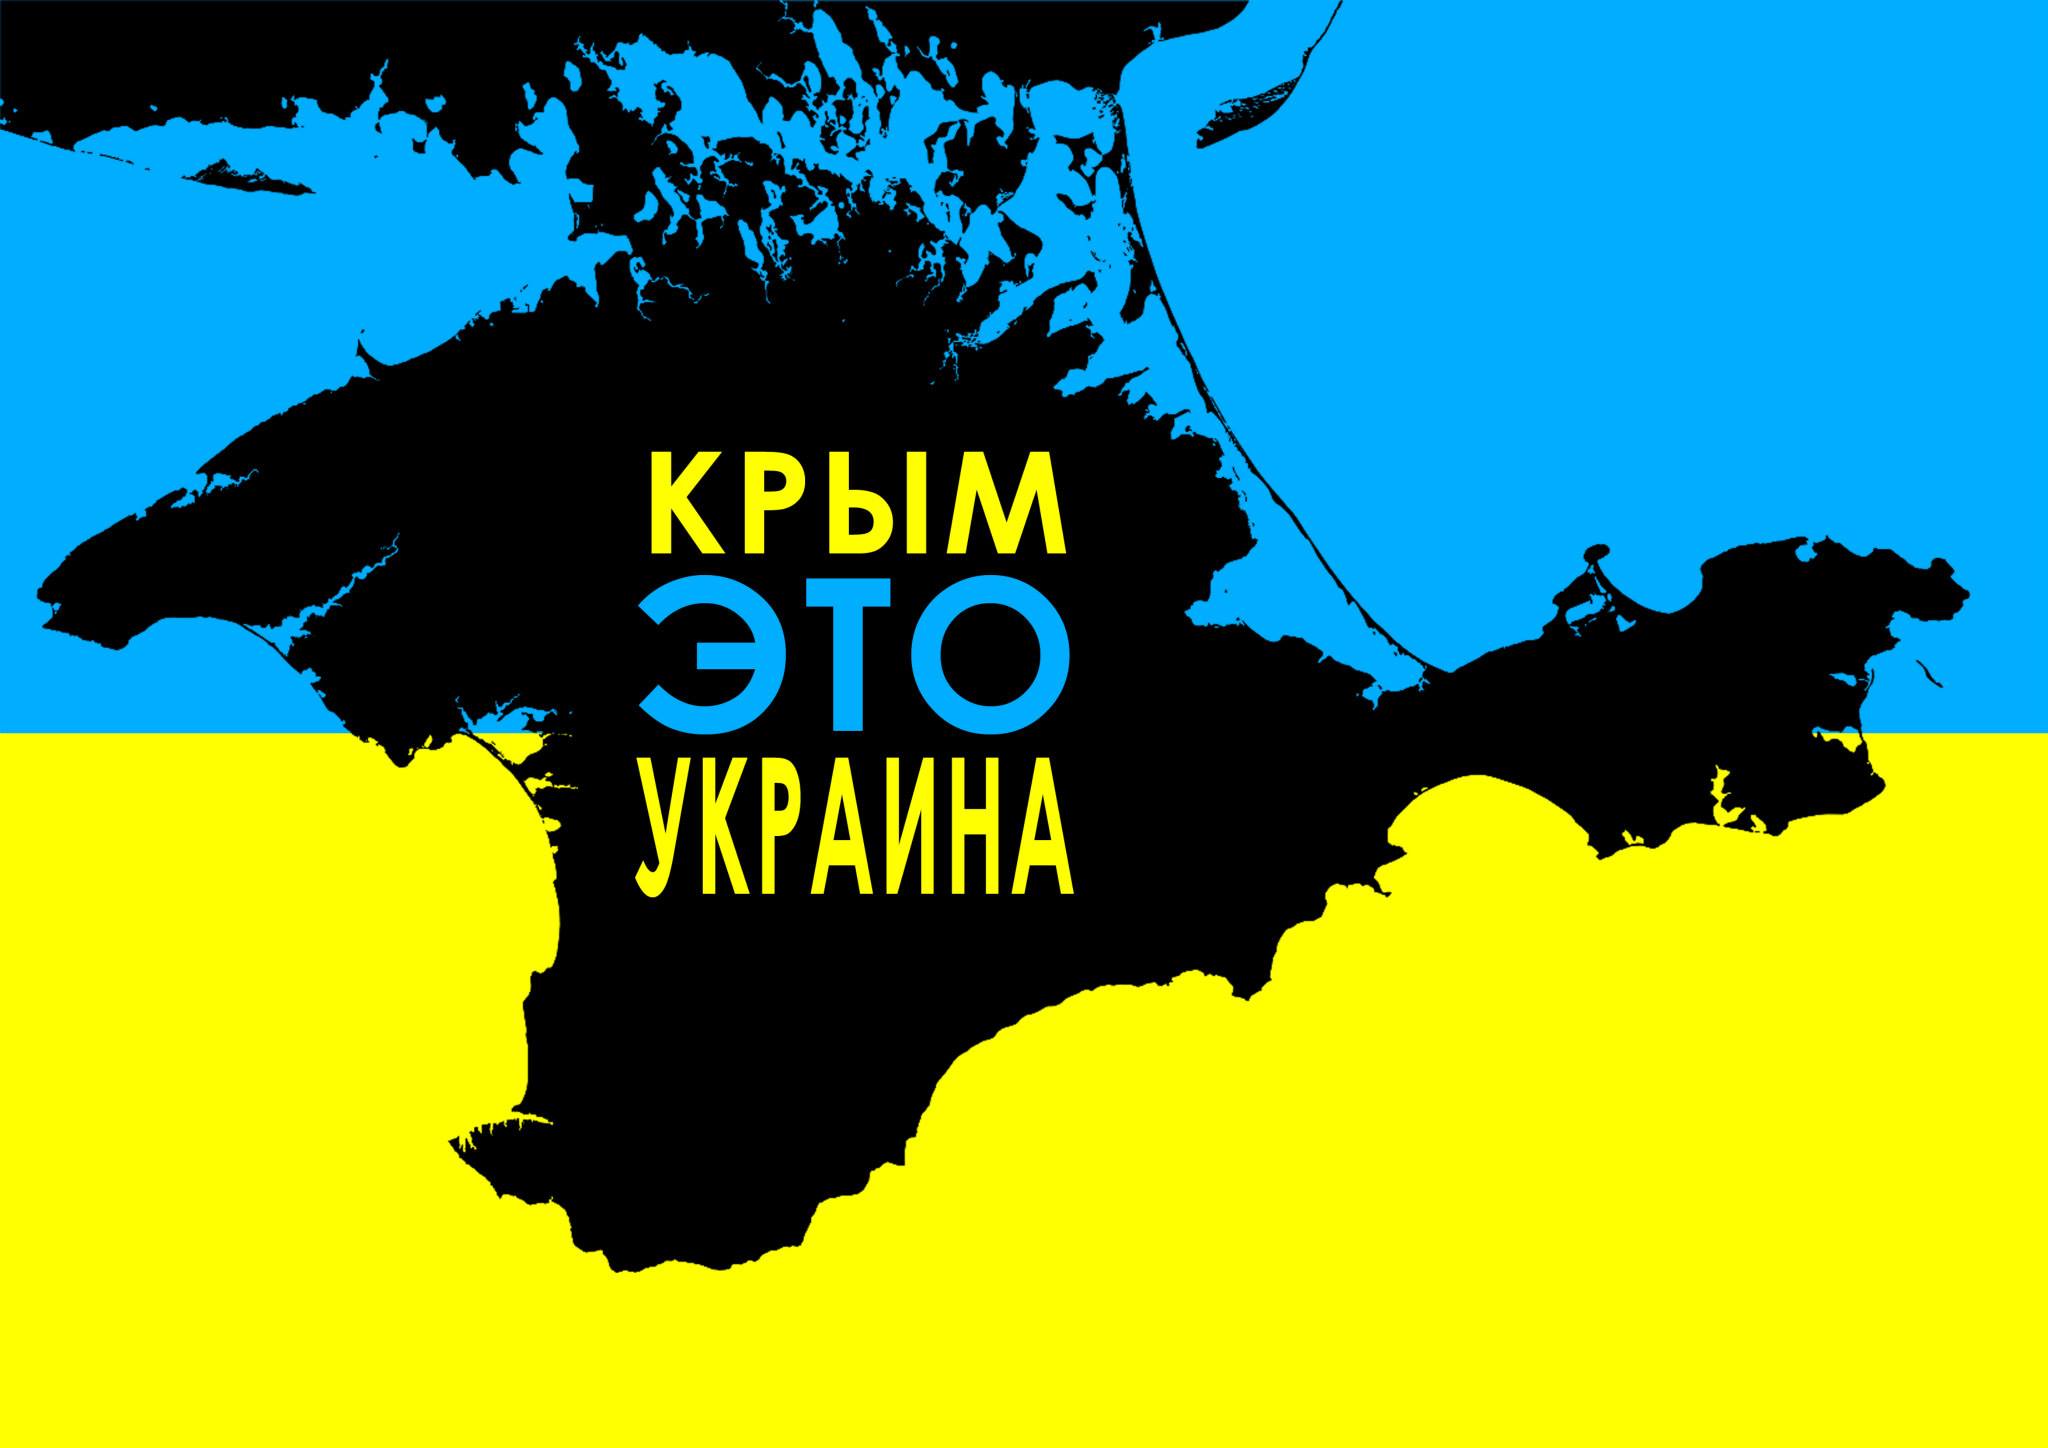 В Краснодаре работника автовокзала наказали за карту с украинским Крымом